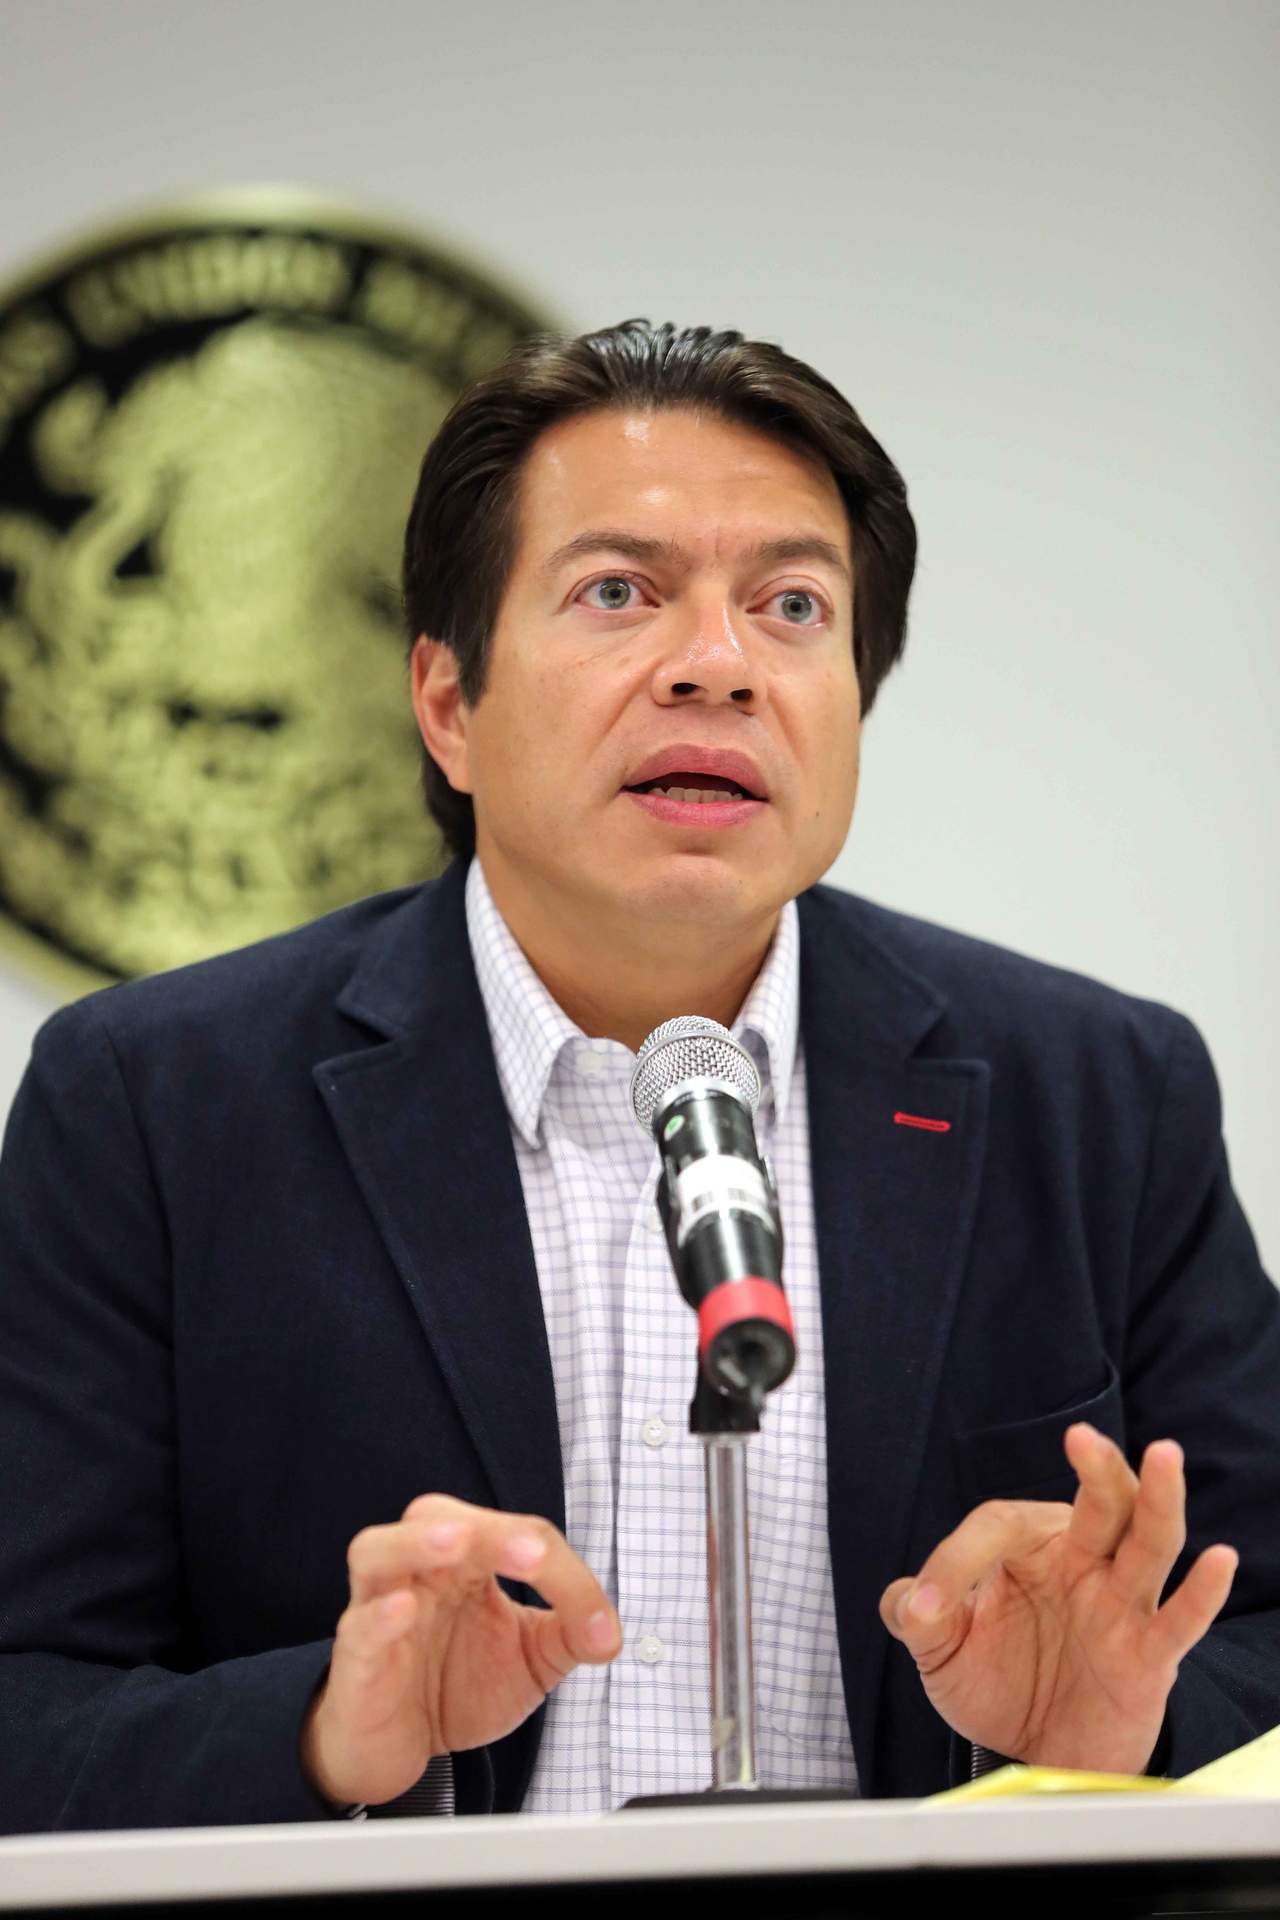 El senador dijo que él seguirá apoyando al senador Miguel Barbosa. (ARCHIVO)